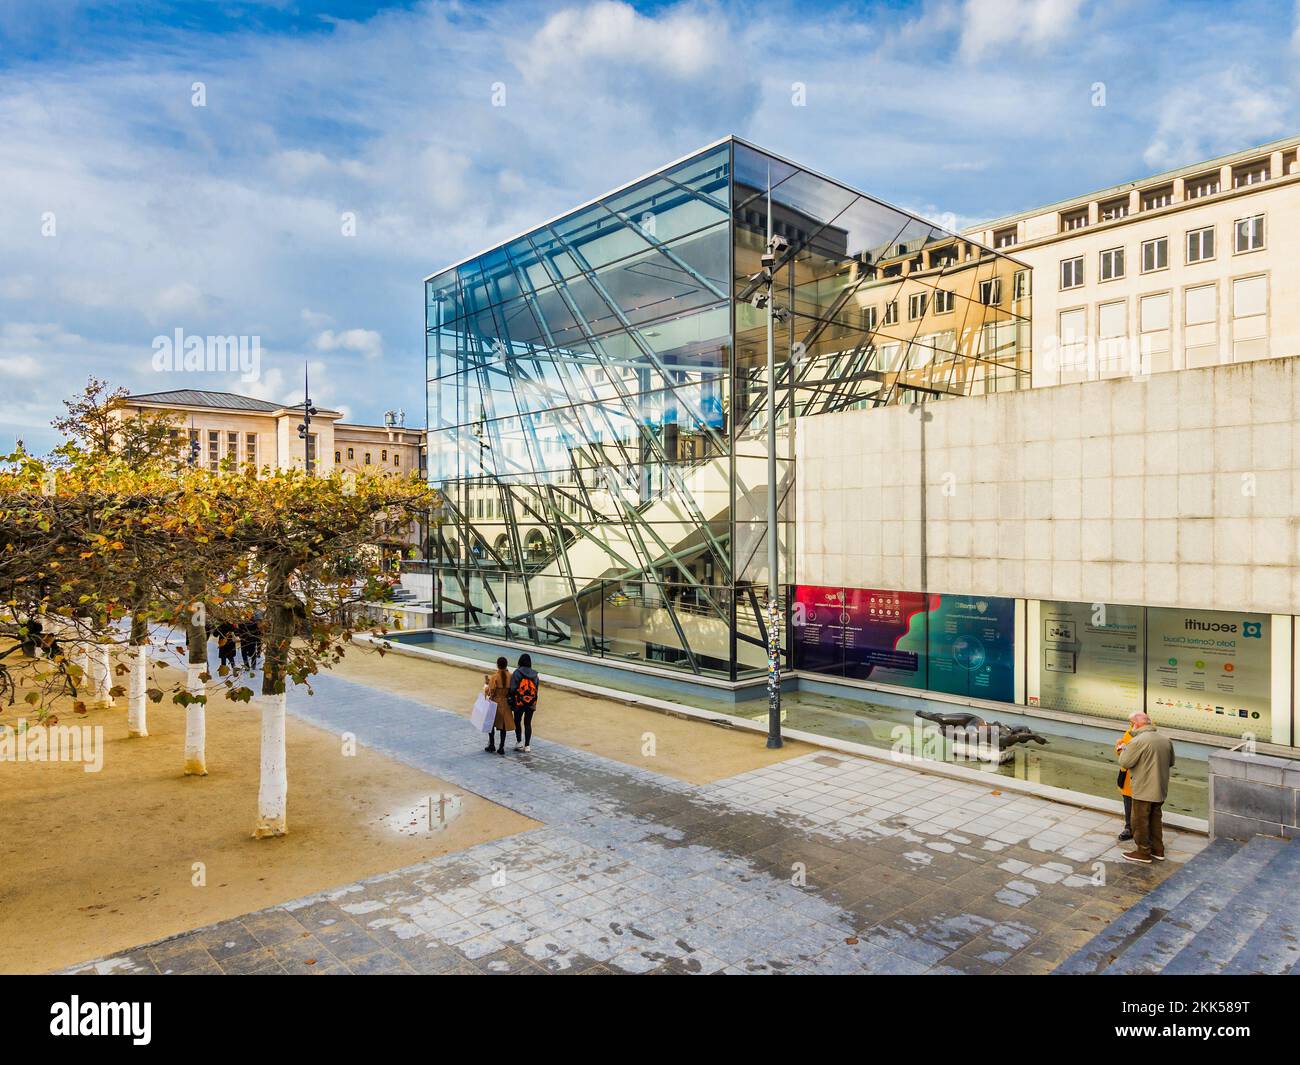 Centro conferenze con architettura moderna in vetro in Piazza Bruxelles - Bruxelles, Belgio. Foto Stock